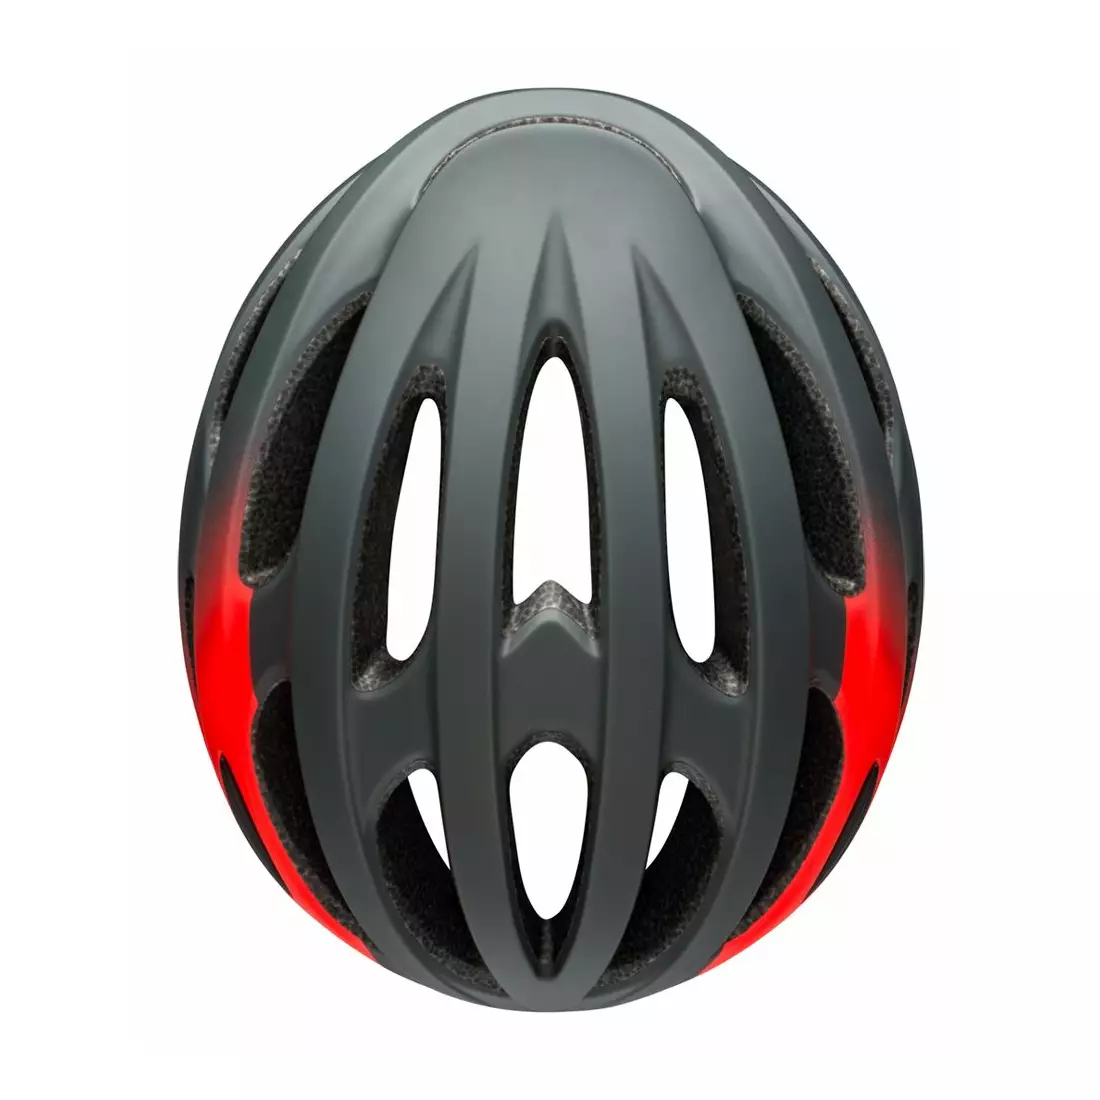 BELL FORMULA road bike helmet, matte gloss gray infrared